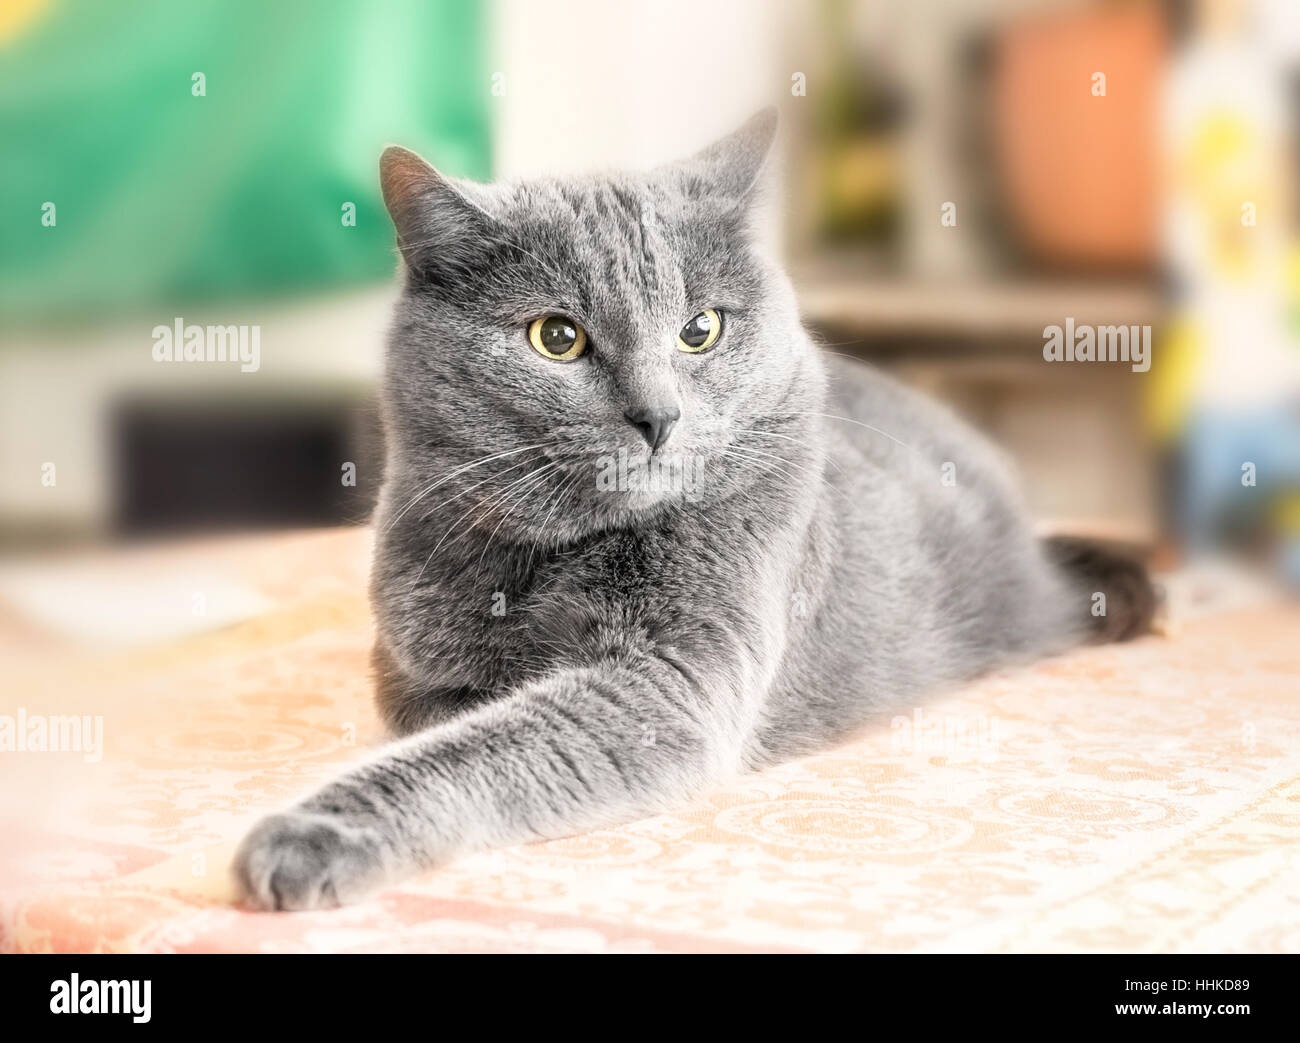 Nizza adulto gatto grigio nel profondo del pensiero Foto Stock